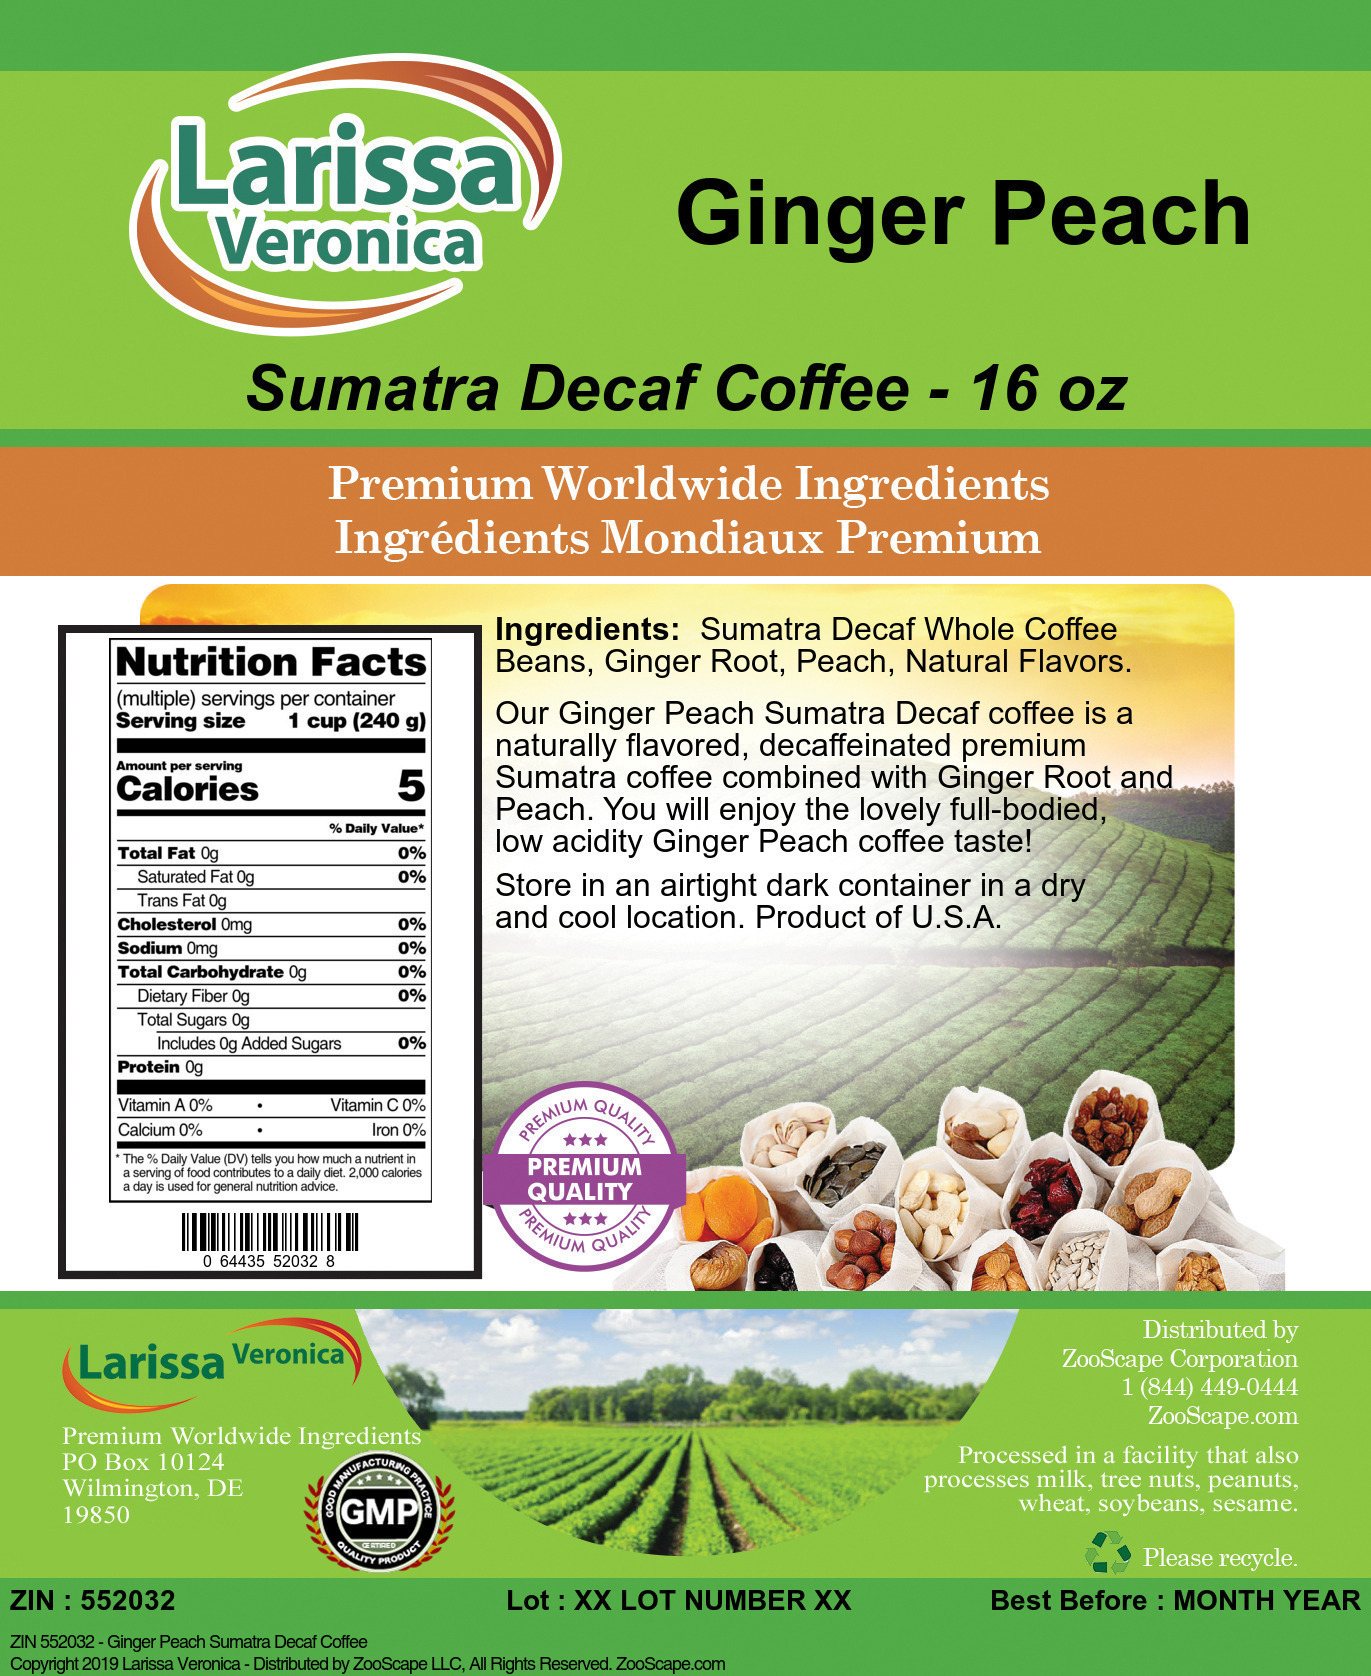 Ginger Peach Sumatra Decaf Coffee - Label